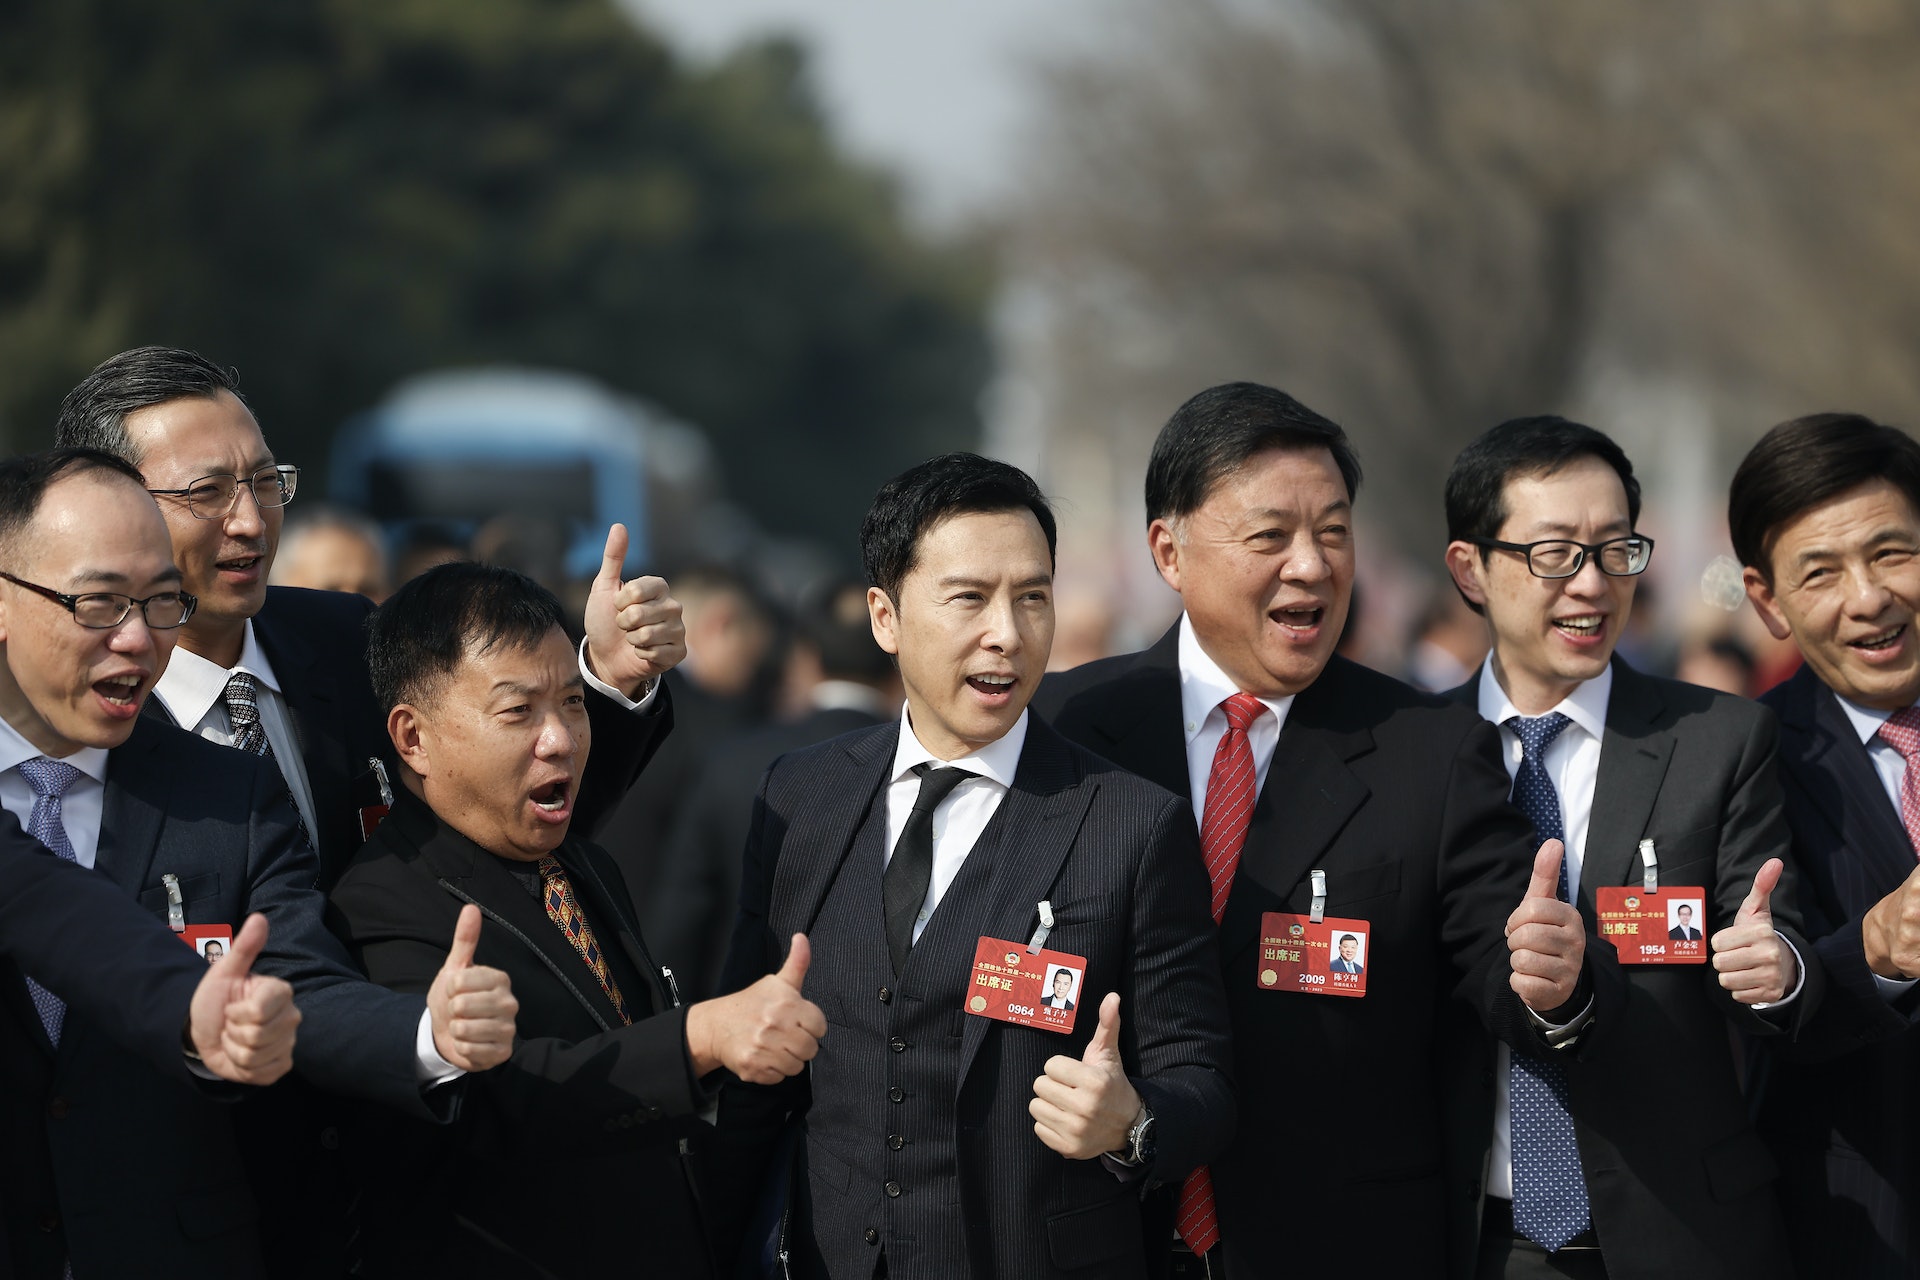 甄子丹跻身政坛出席北京两会 “用动作片创造更多中国骄傲”